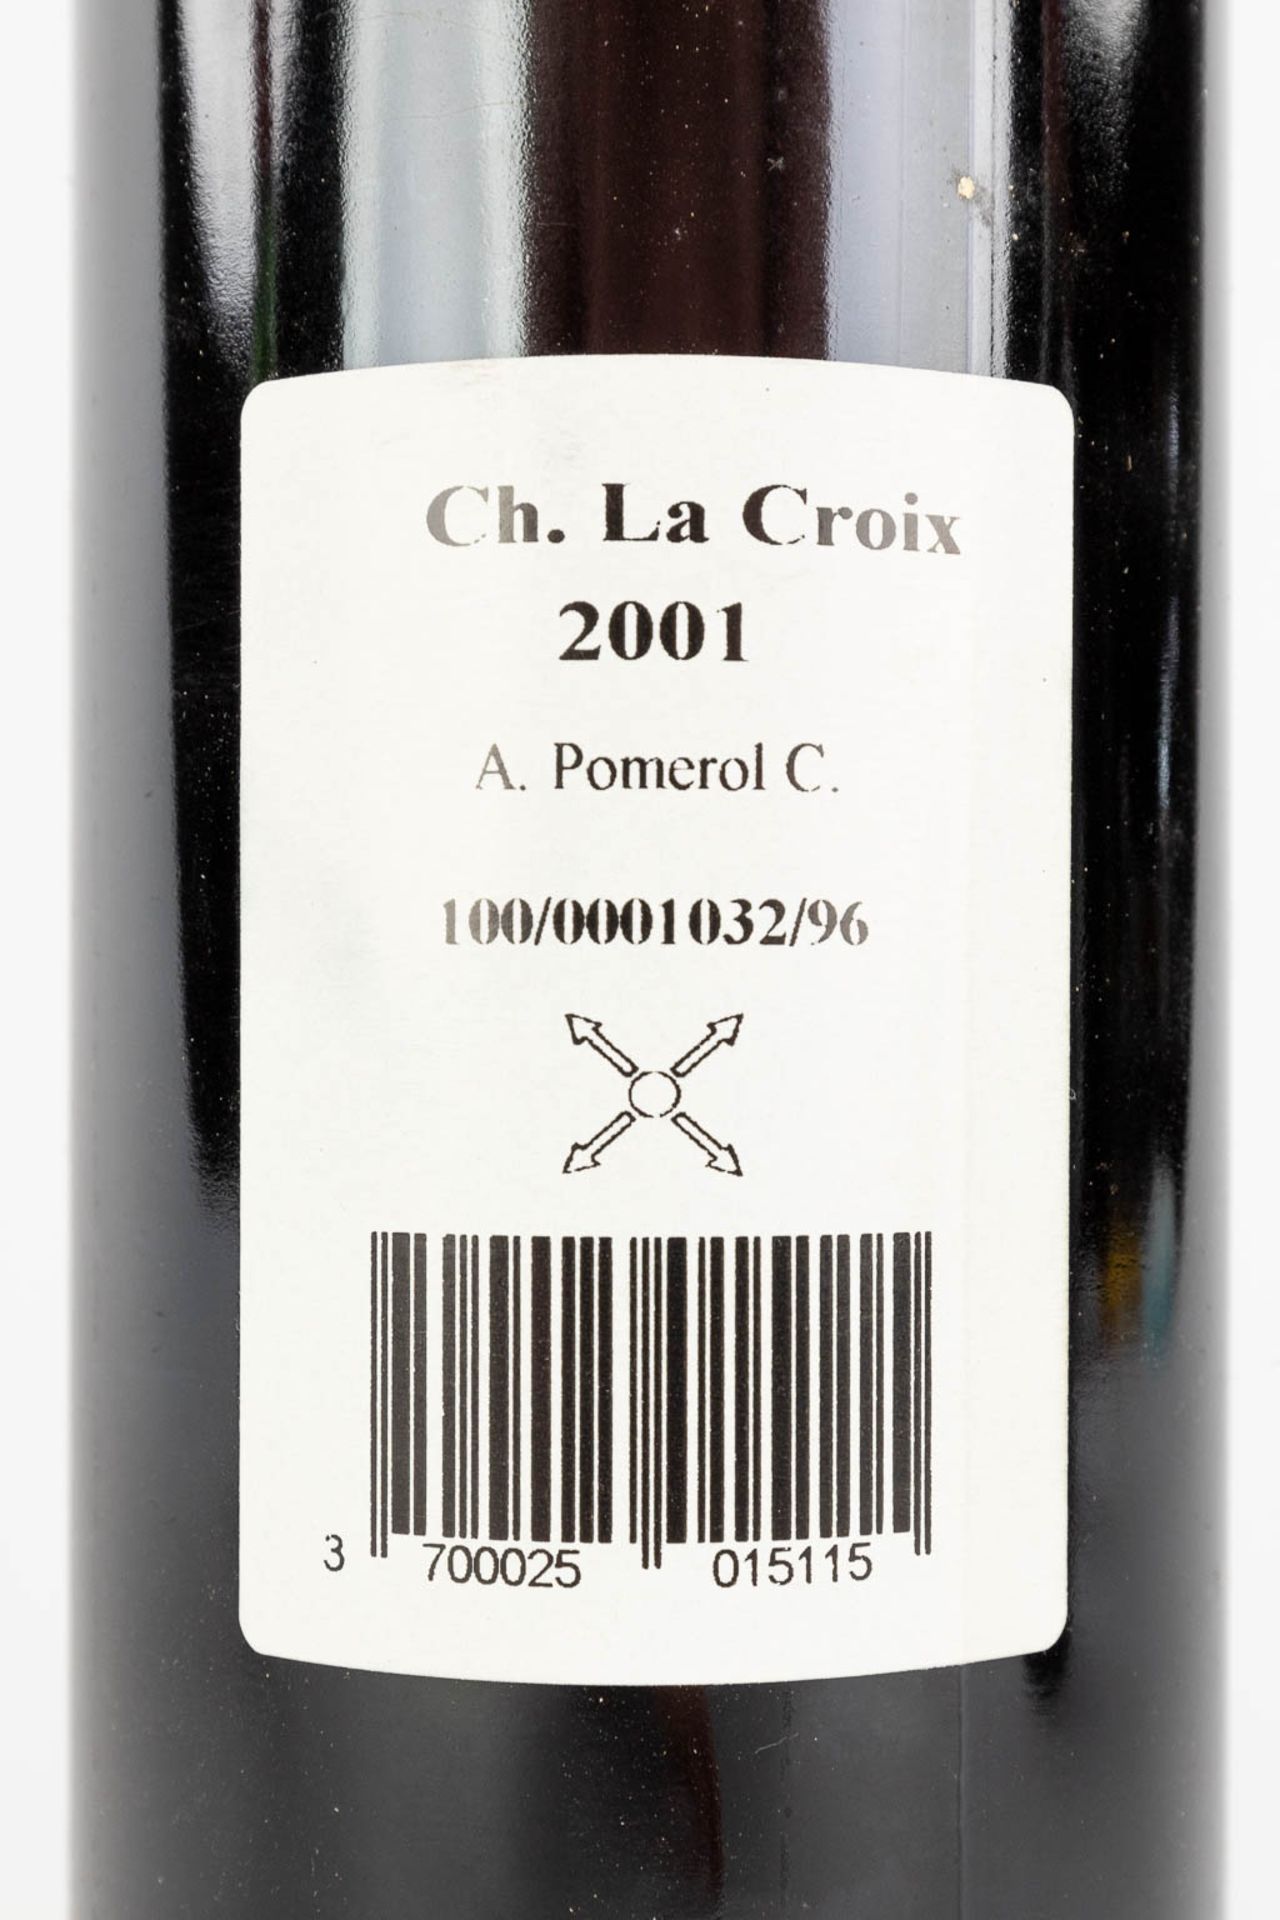 Chateau La Croix Pomerol 2001, 3 bottles & Chateau Pavie 1959, 2 bottles - Bild 11 aus 16